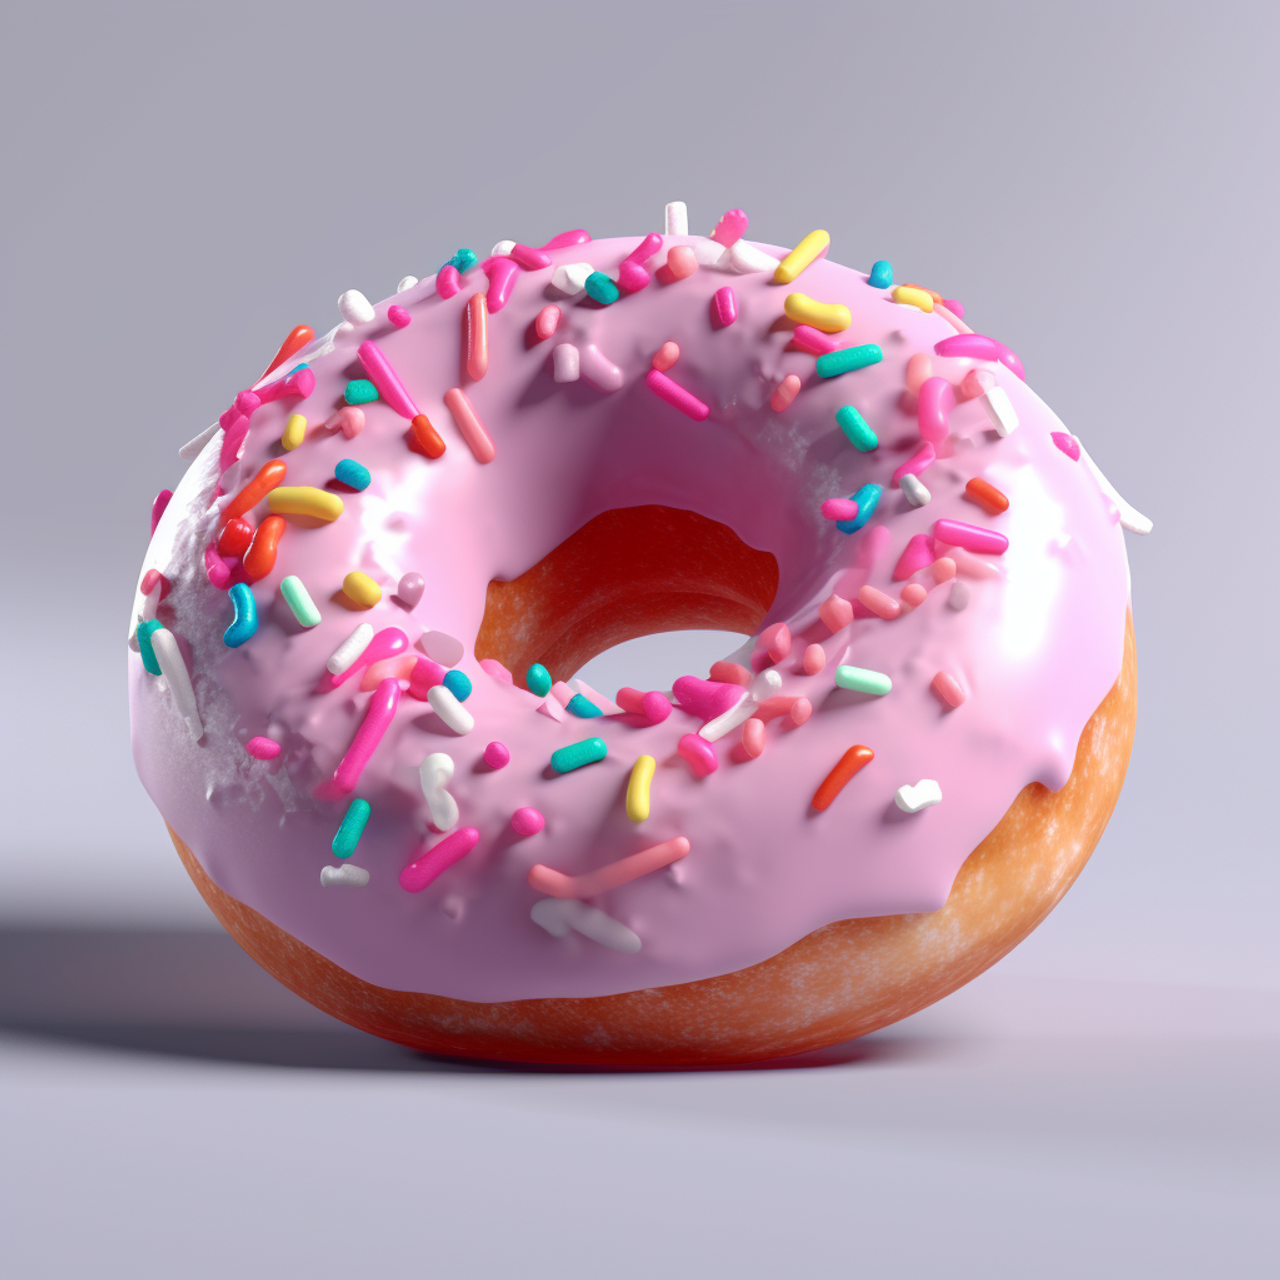 pink sprinkled donut